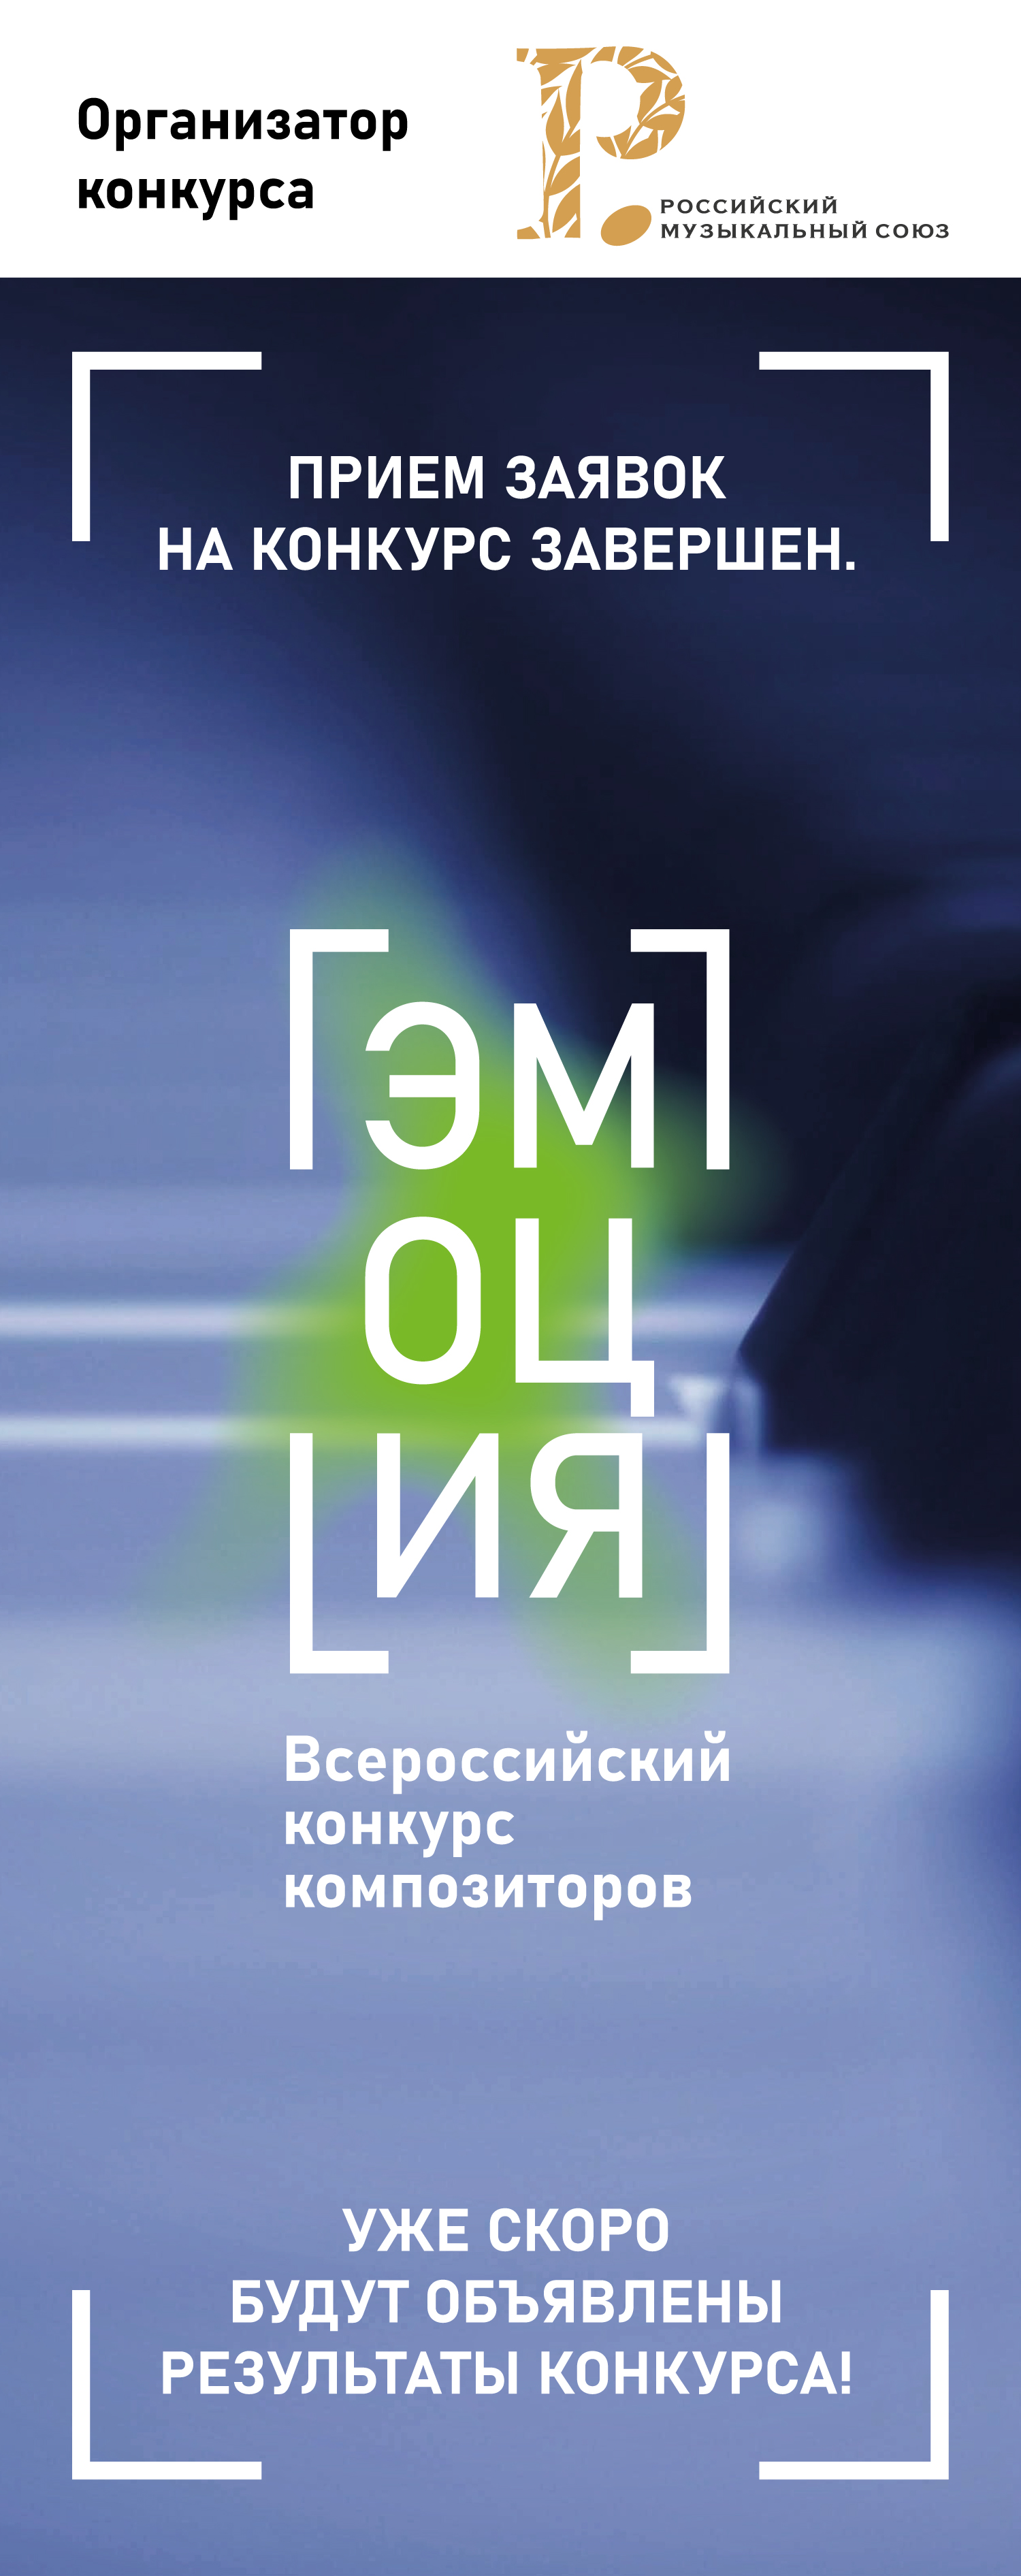 Всероссийский конкурс композиторов «Эмоция»